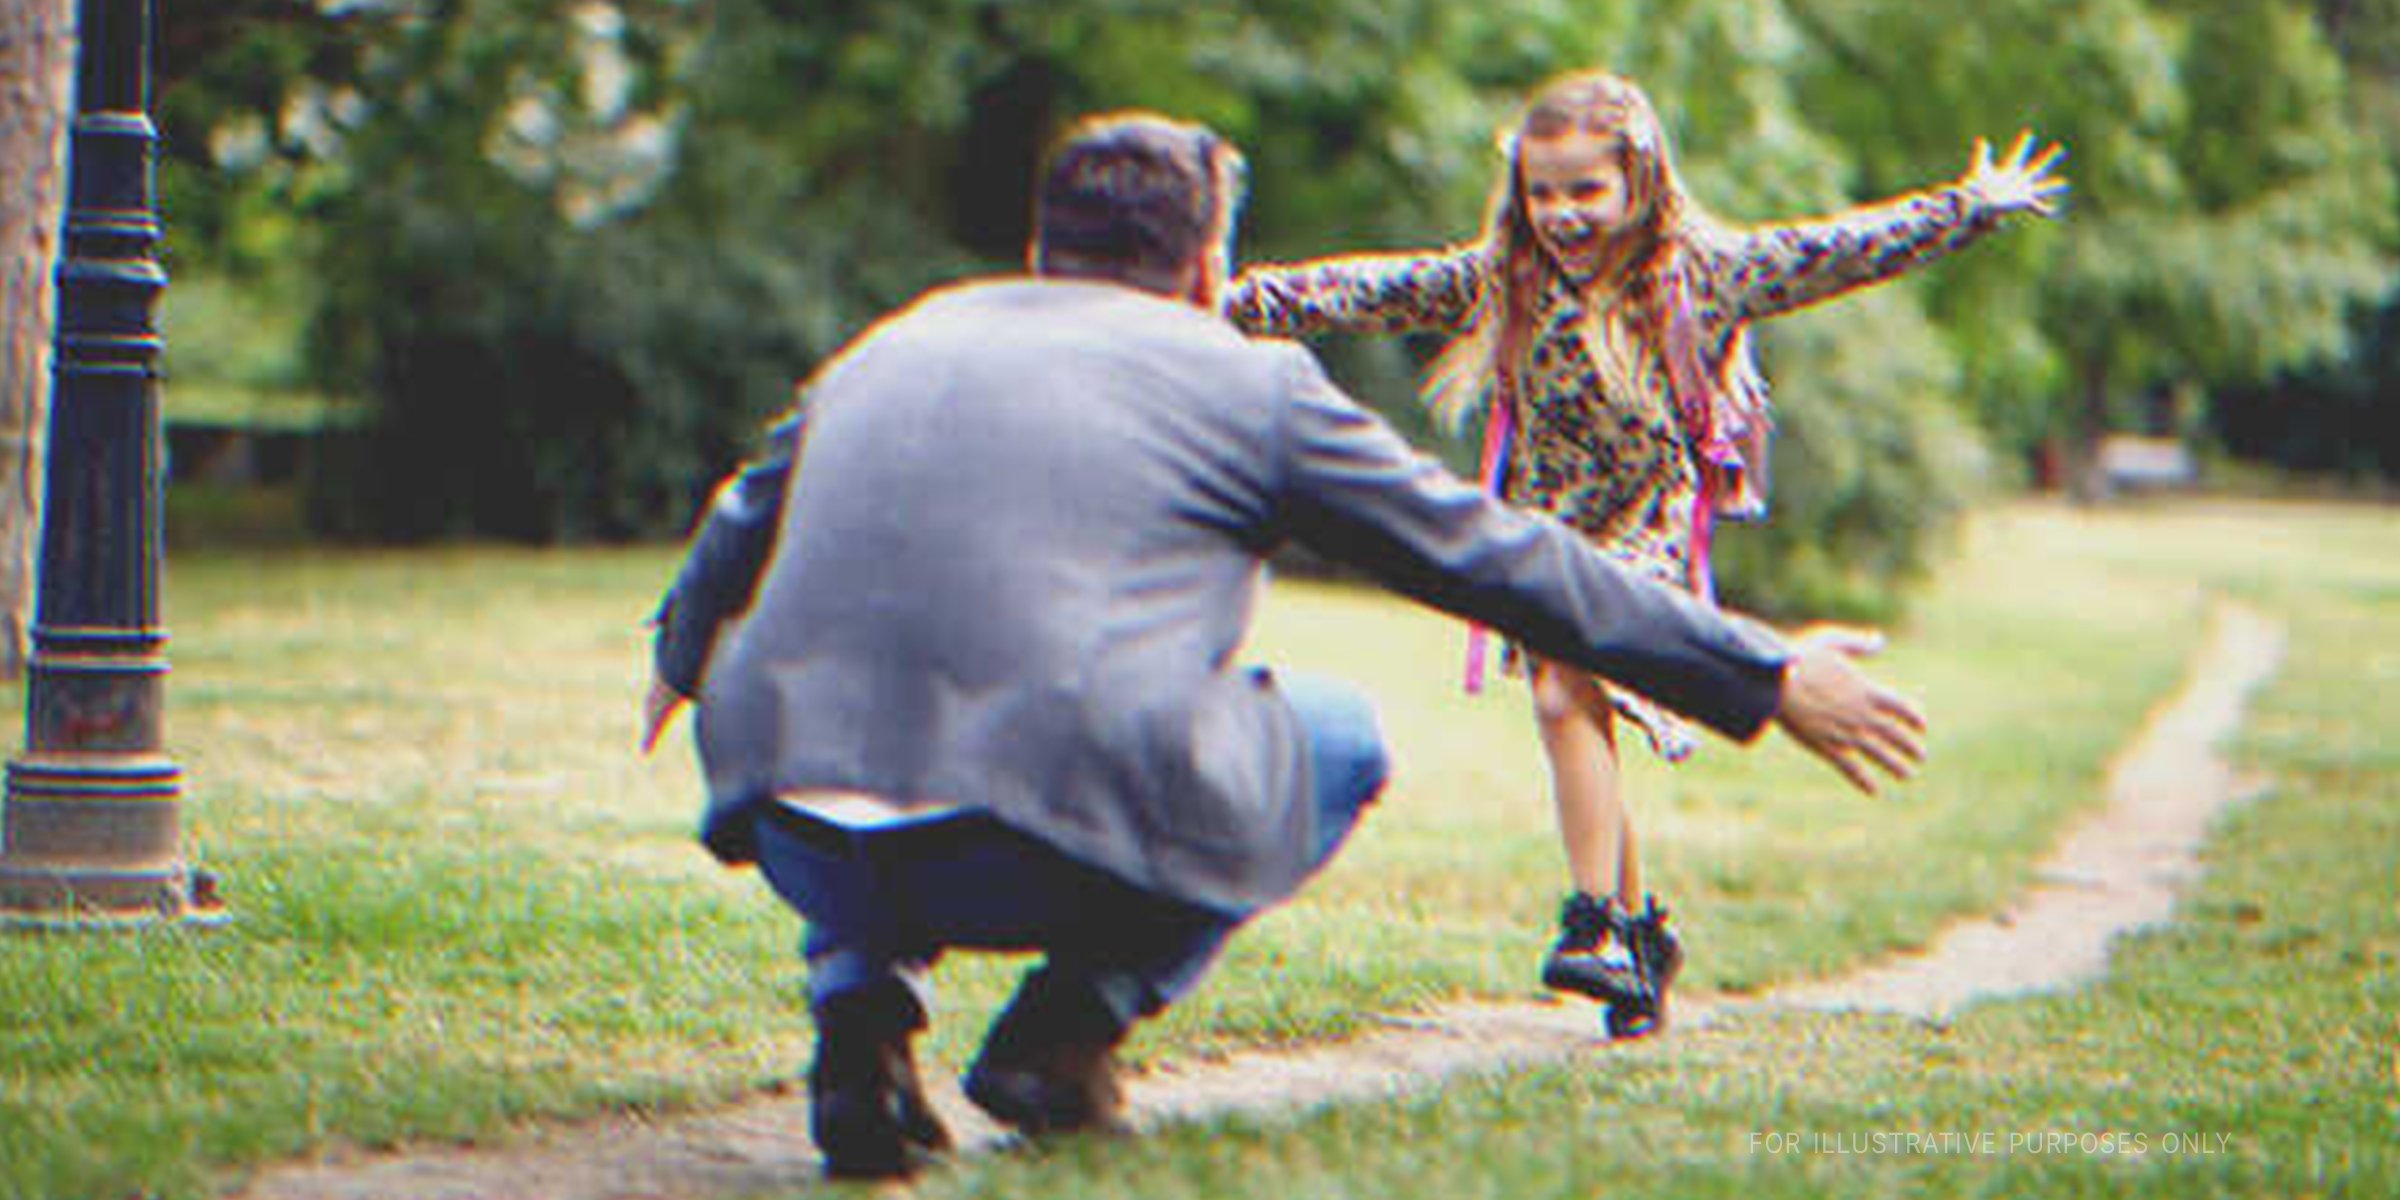 A happy little girl running towards a man | Source: Shutterstock